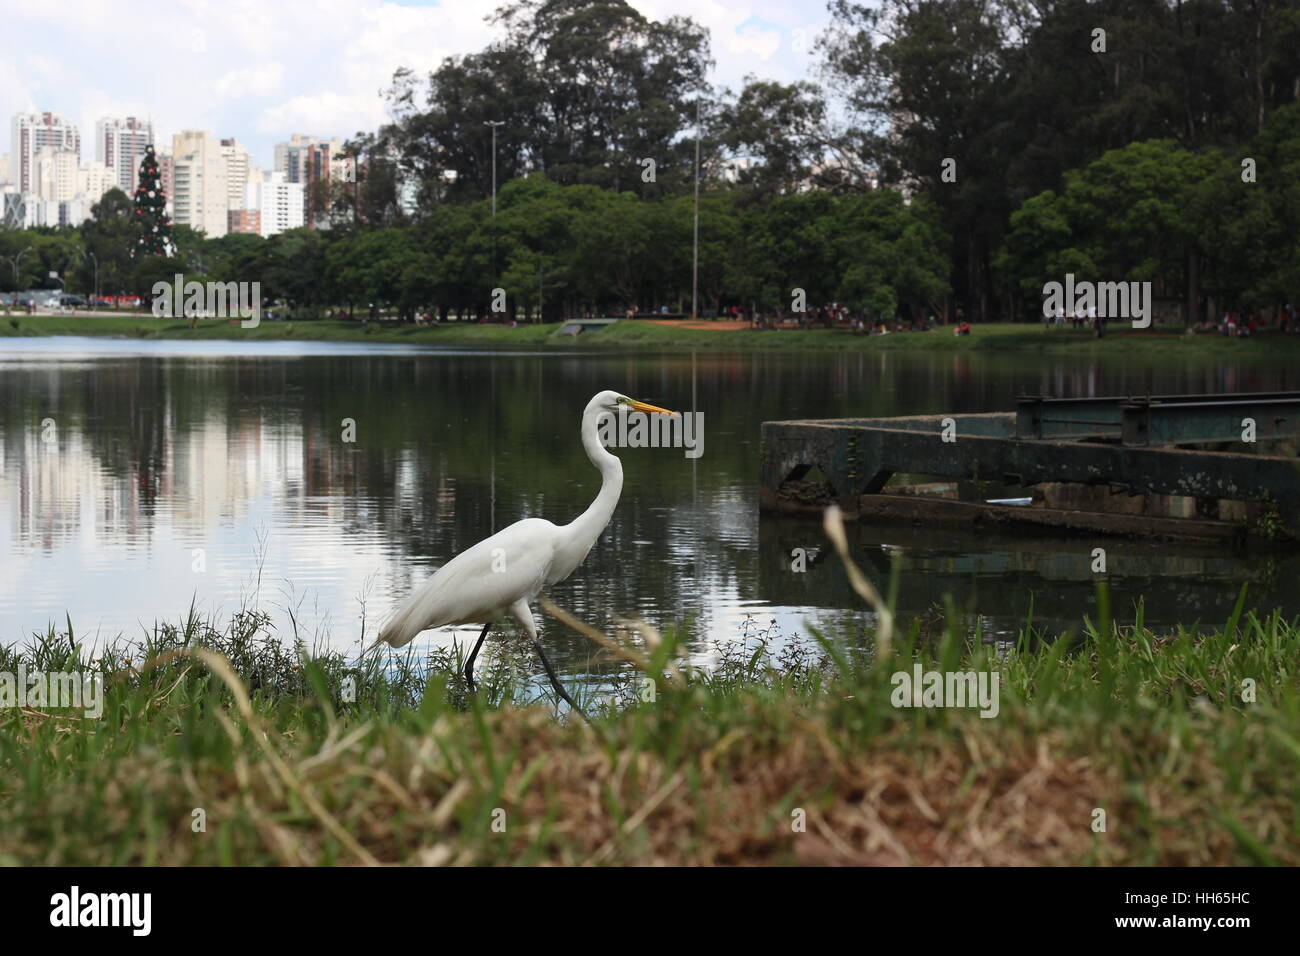 Parque Do Ibirapuera-São Paulo-Brasil Stockfoto